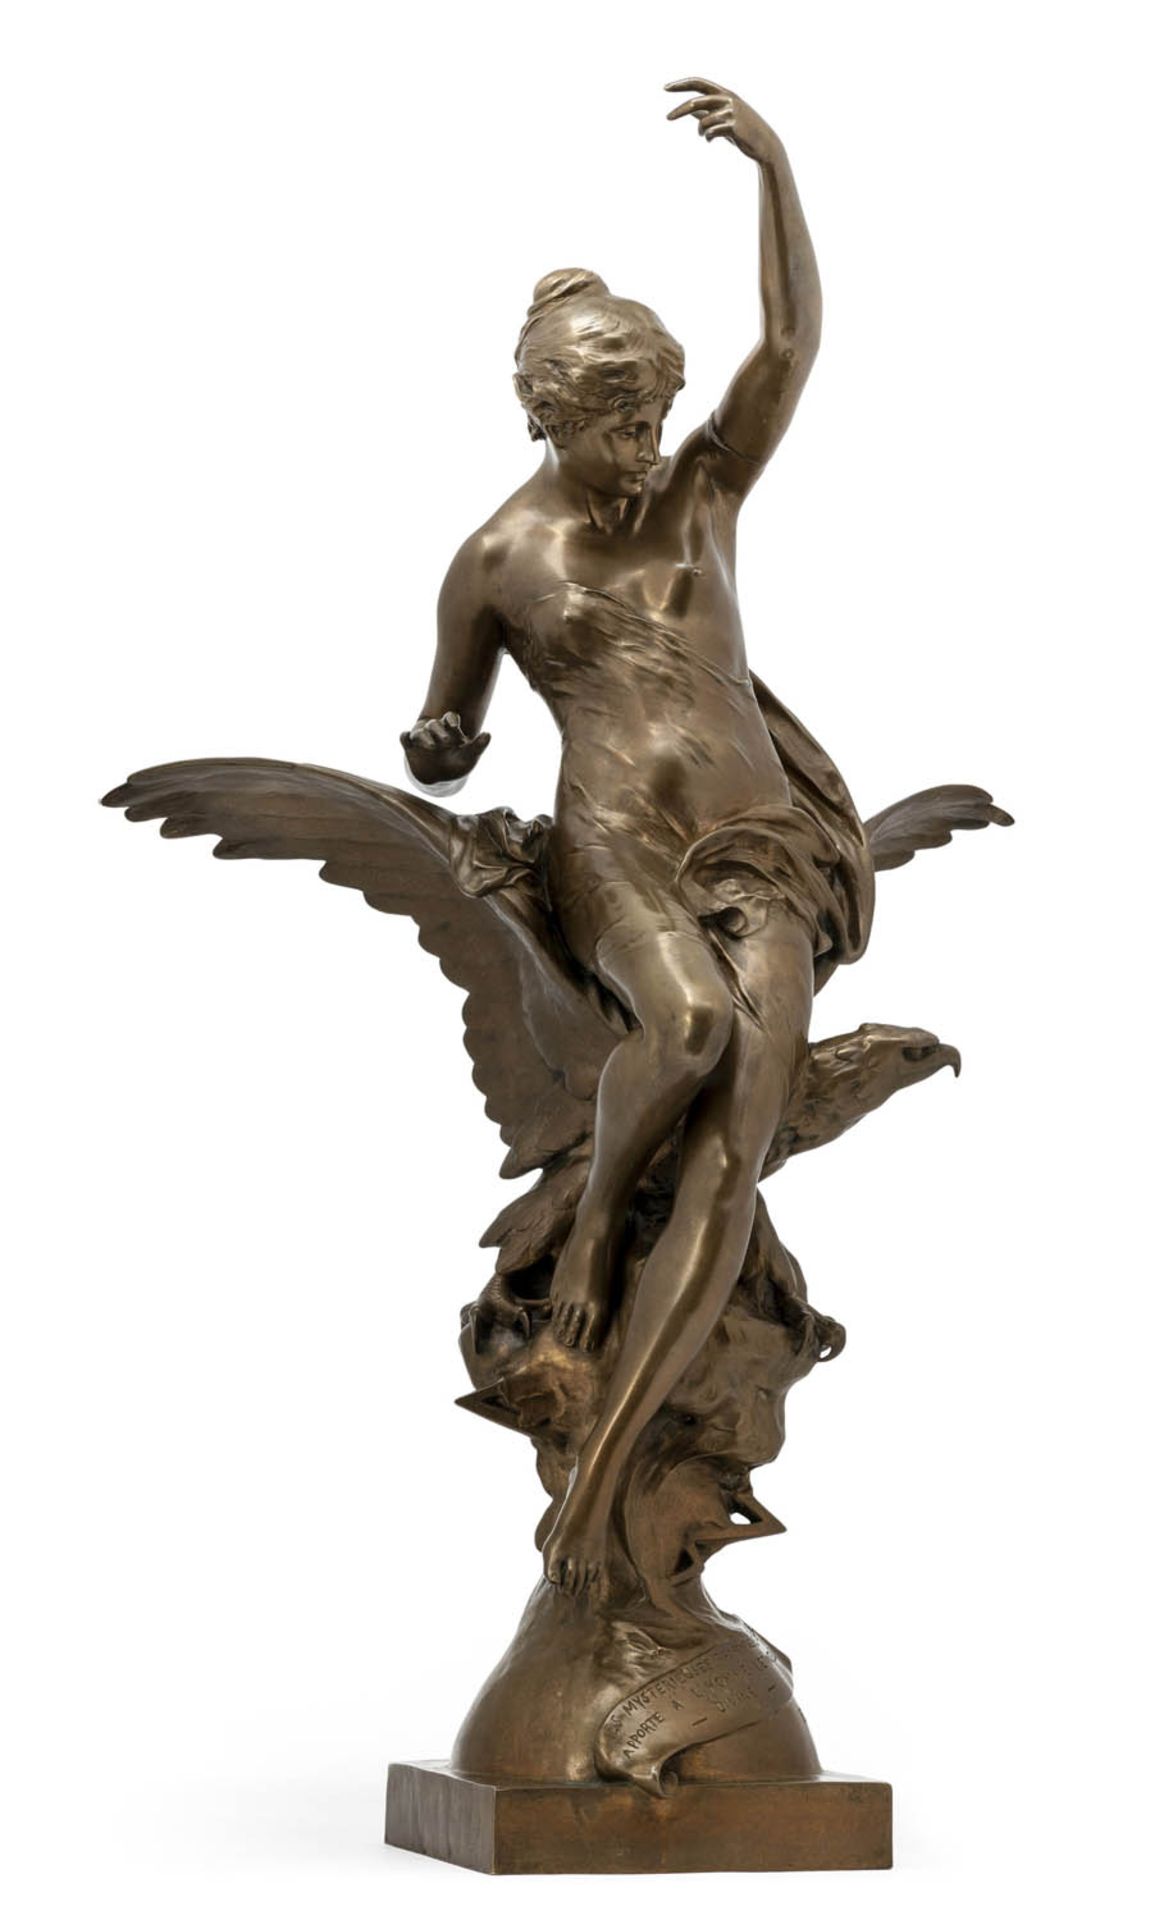 Picault, Emile LouisFrankreich, 1833 - 1915H. 88 cm"L'inspiration" oder Hebe und der Adler. - Bild 2 aus 3